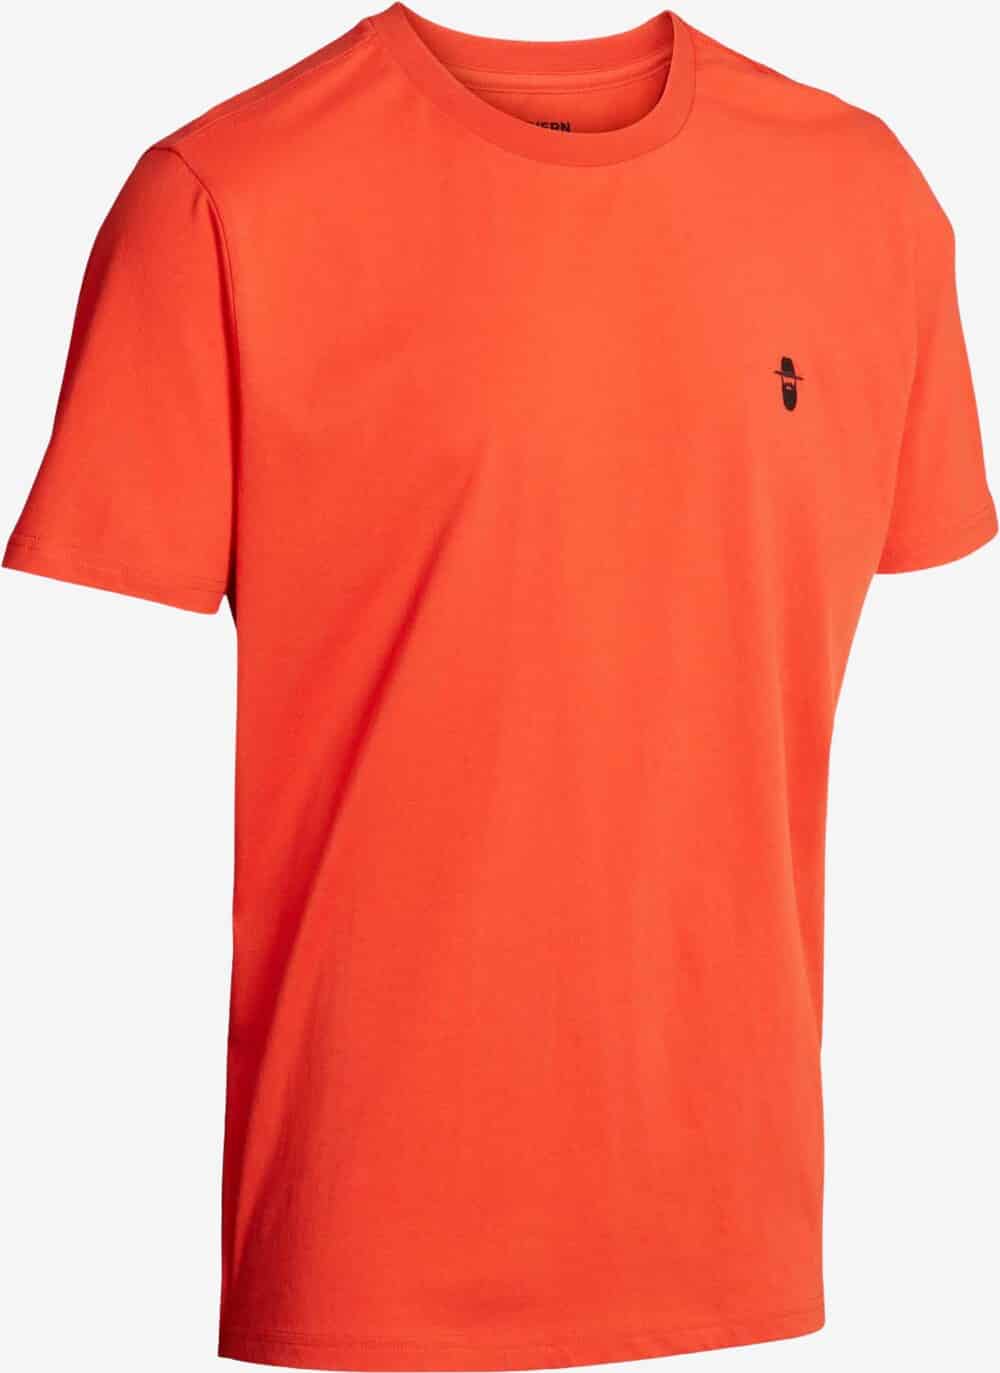 Se Northern Hunting - Karl T-shirt (Orange) - 4XL hos Friluft.dk